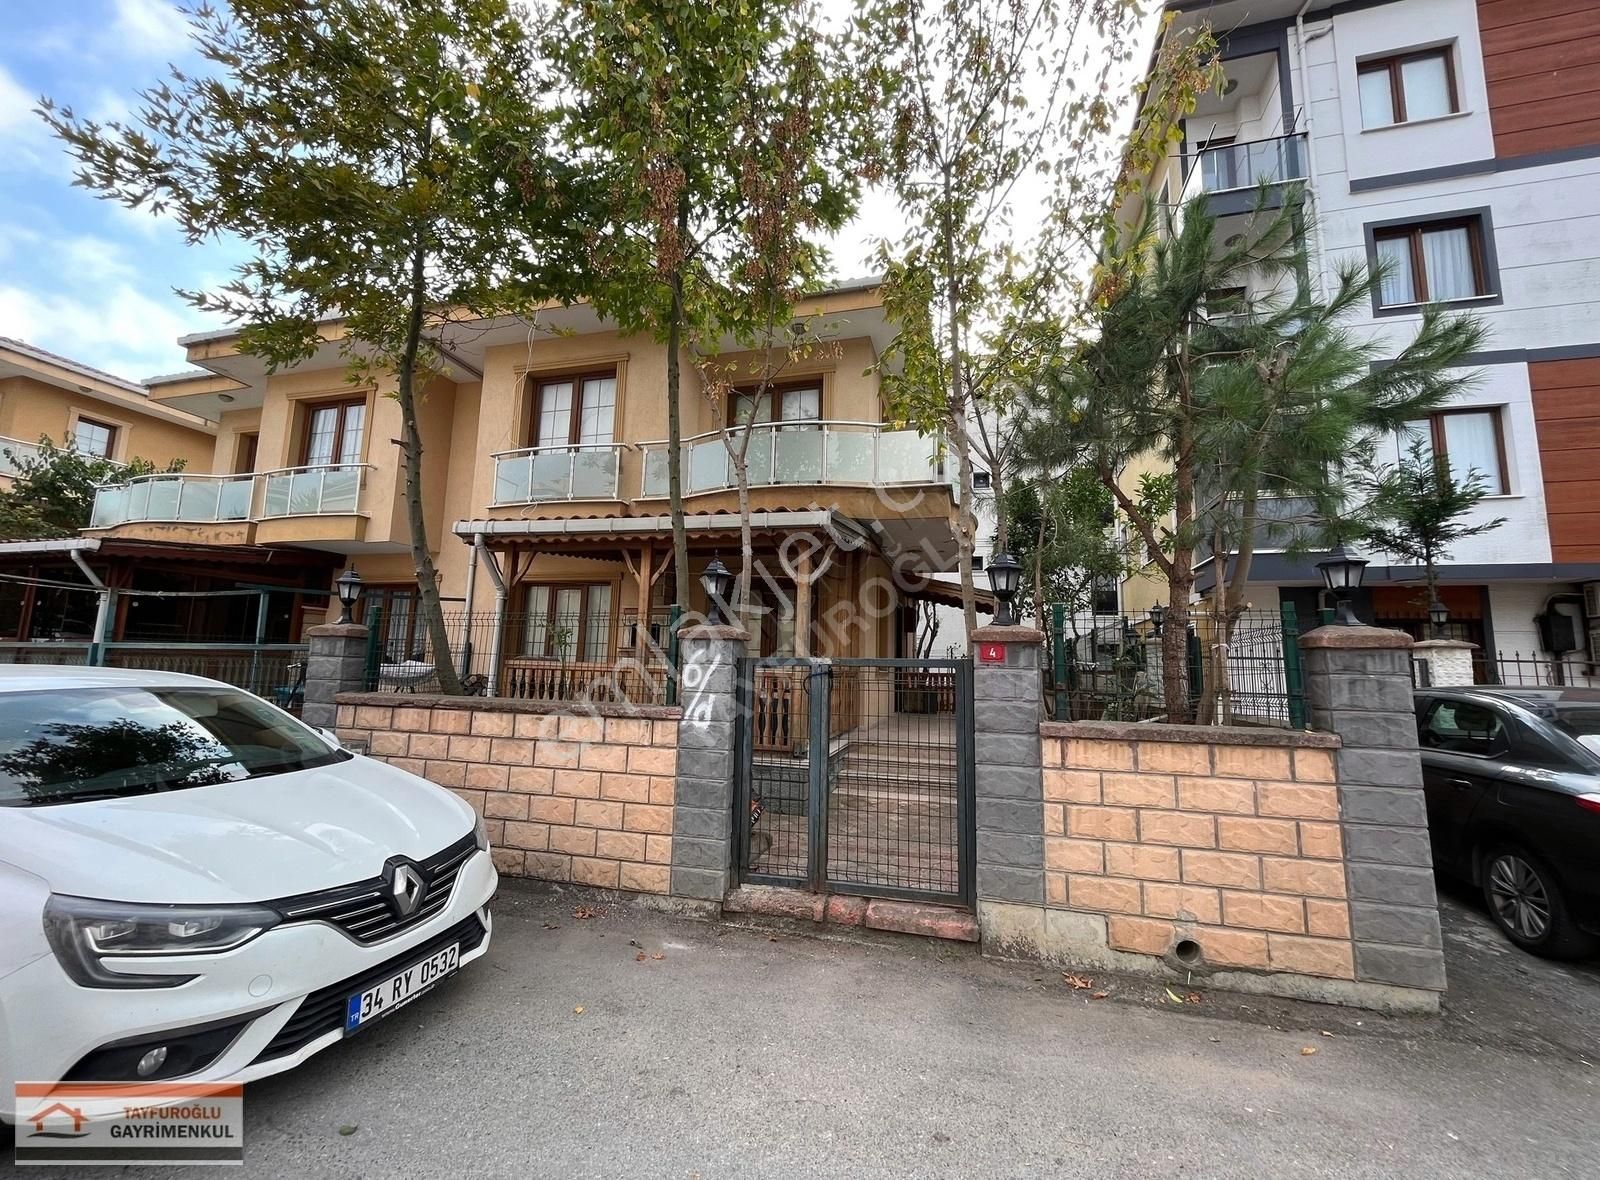 Şile Çavuş Satılık Villa ŞİLE MERKEZDE ÇARŞIYA ÇOK YAKIN MÜSTAKİL 5+1 TRİPLEKS VİLLA